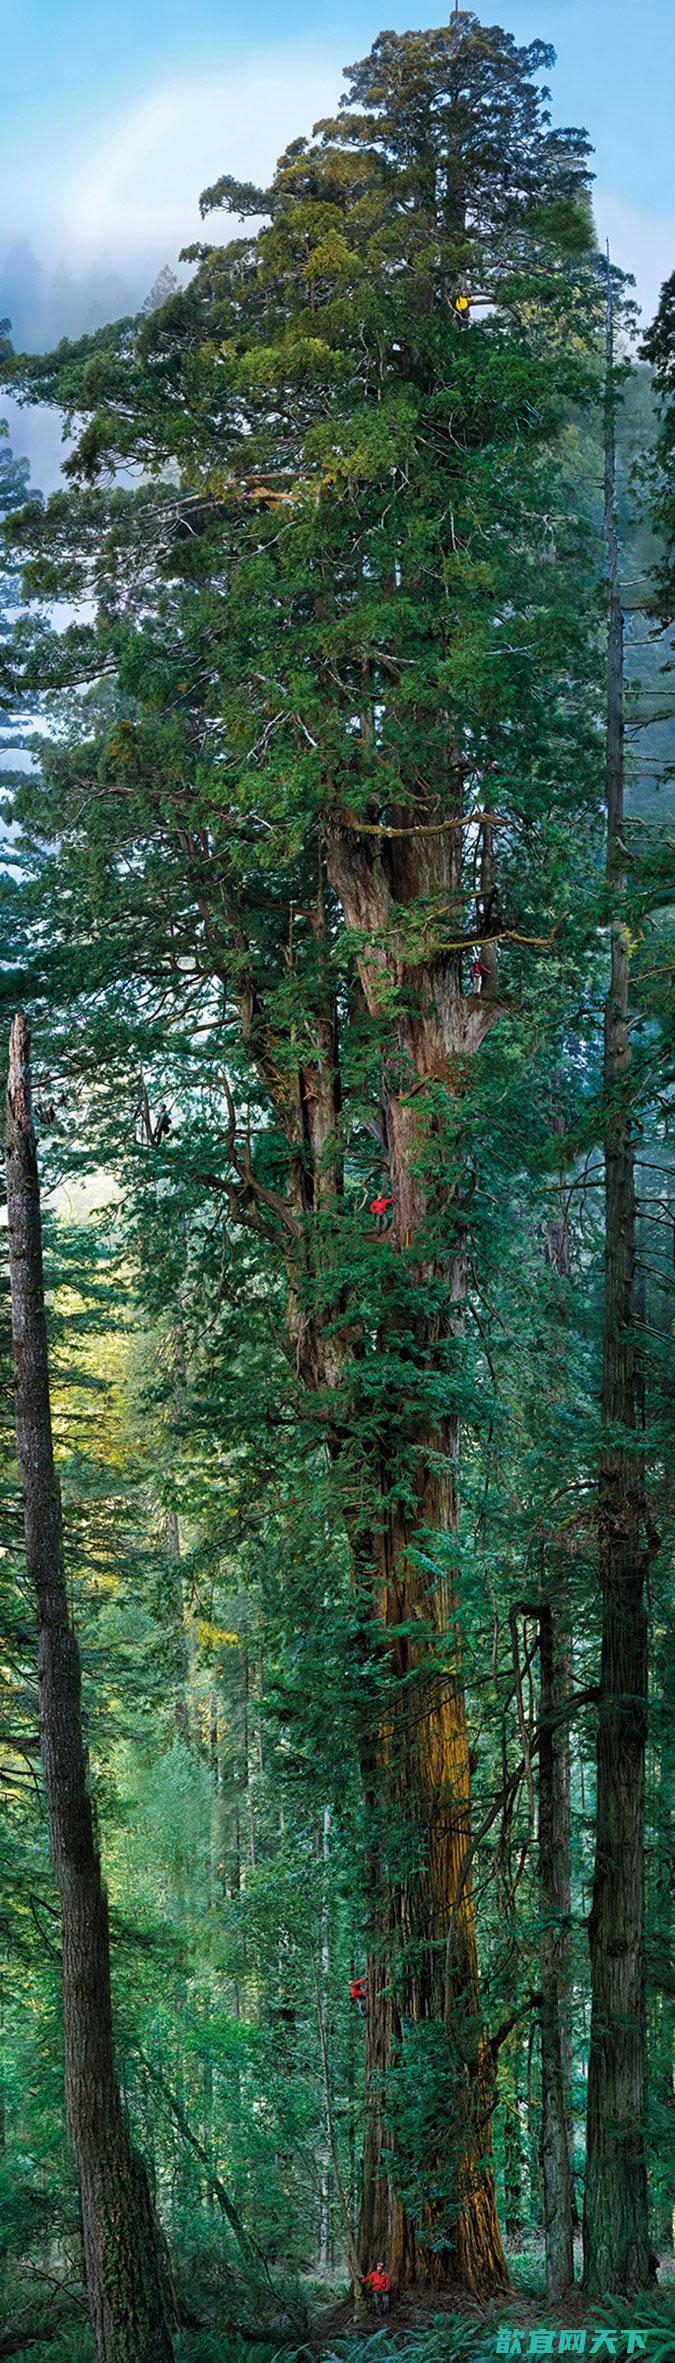 艾萨克·牛顿曾解释高大的如红杉是如何战胜地心引力并将水分运送到其叶子中